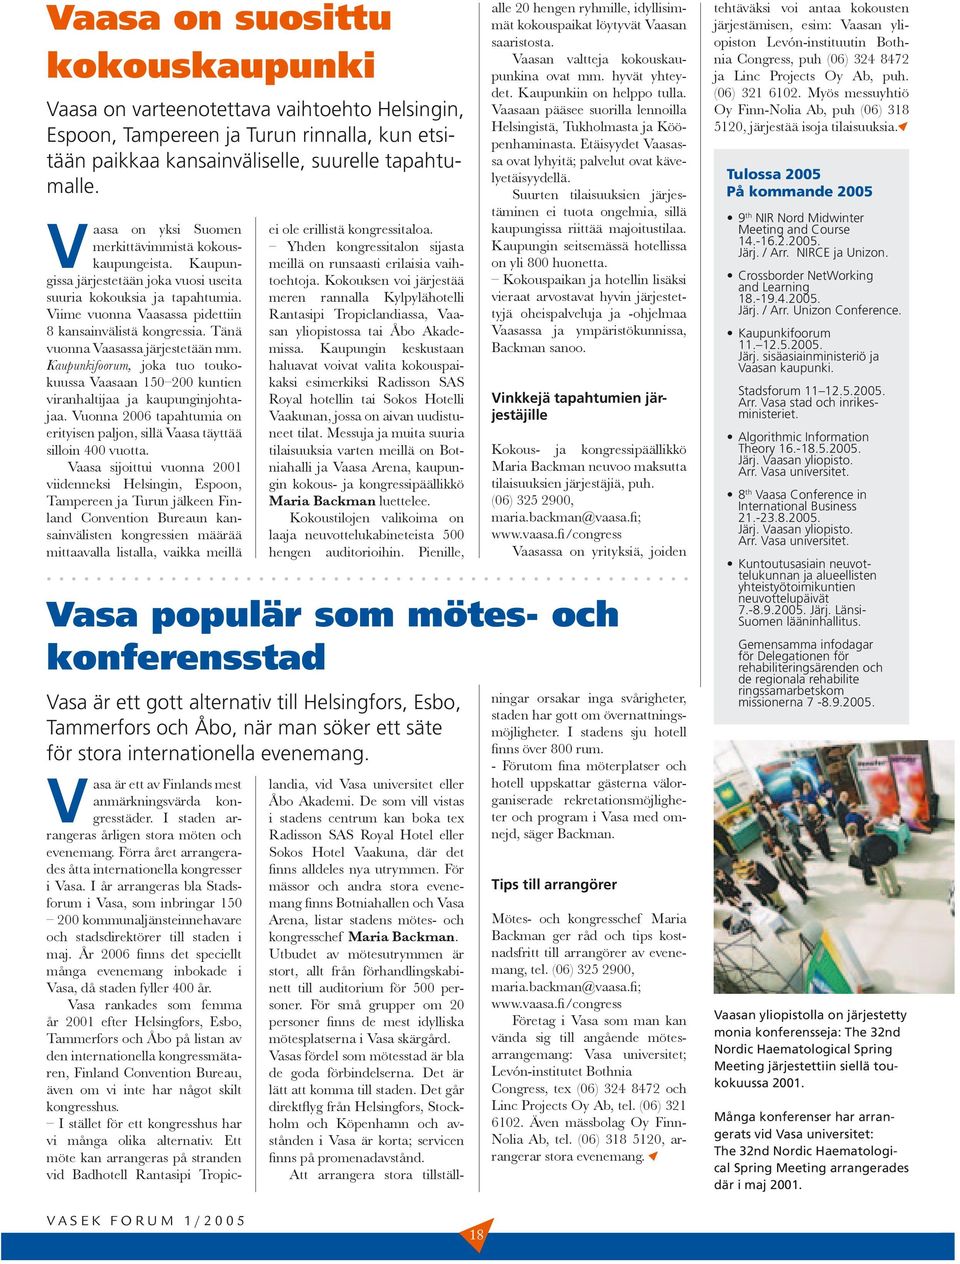 Tänä vuonna Vaasassa järjestetään mm. Kaupunkifoorum, joka tuo toukokuussa Vaasaan 150 200 kuntien viranhaltijaa ja kaupunginjohtajaa.